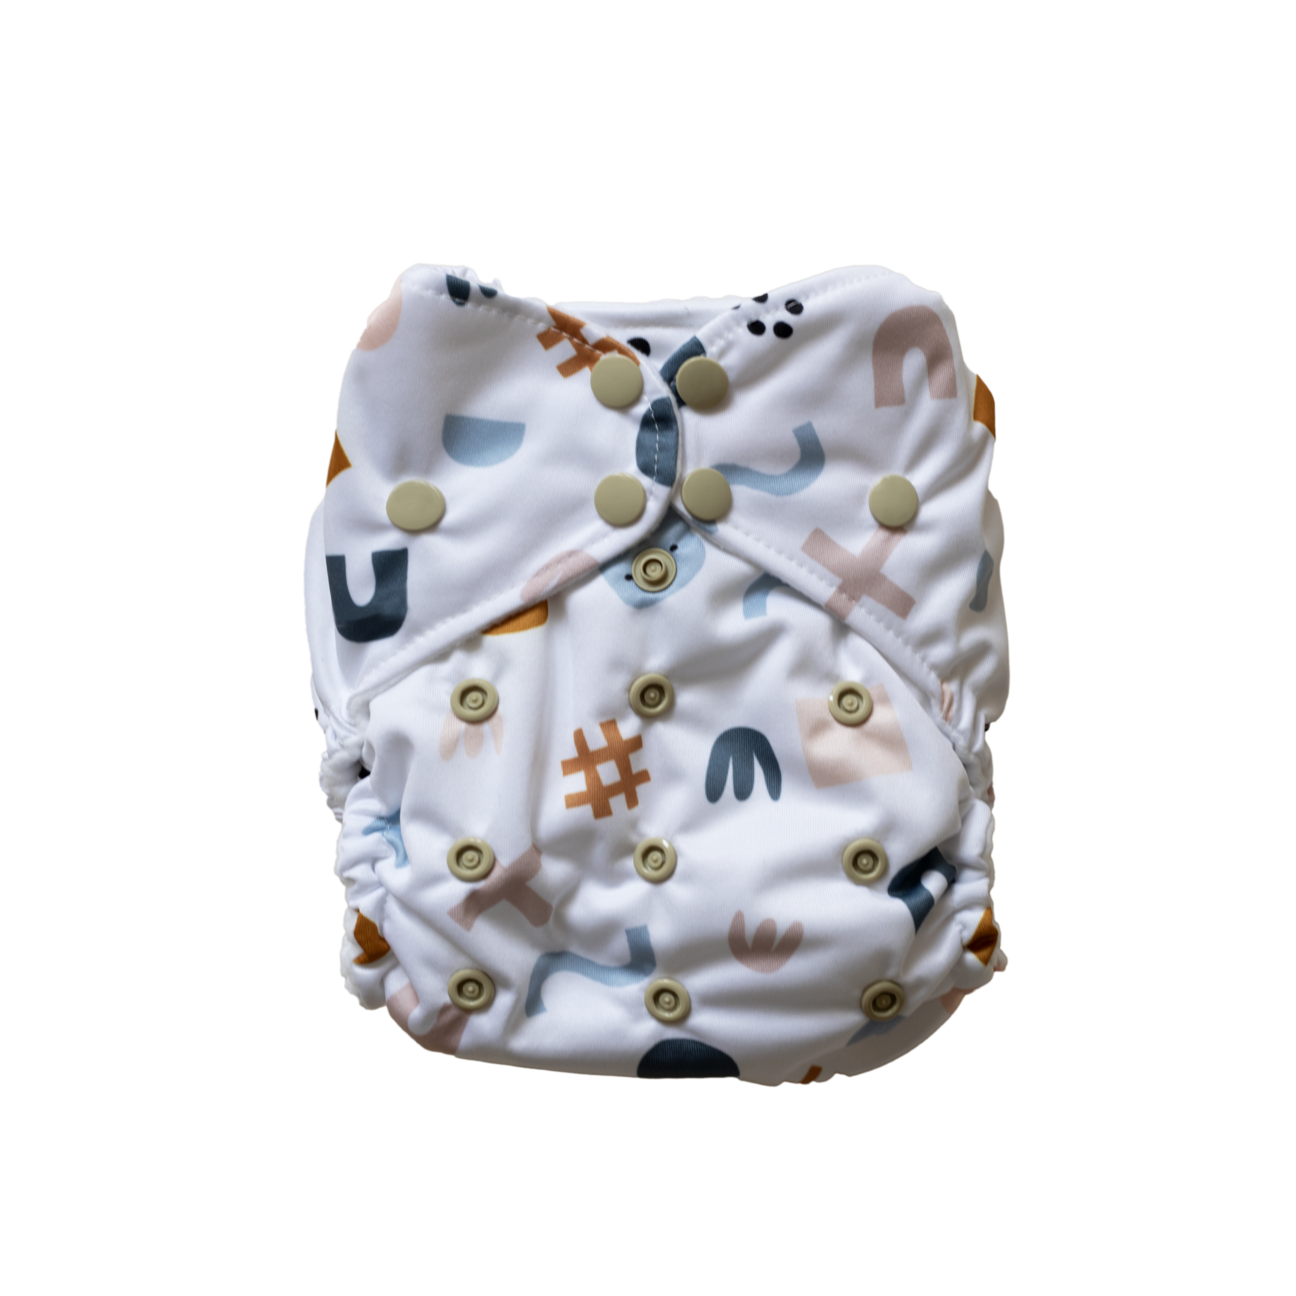 Pim Pam reusable pocket nappy cloth nappy